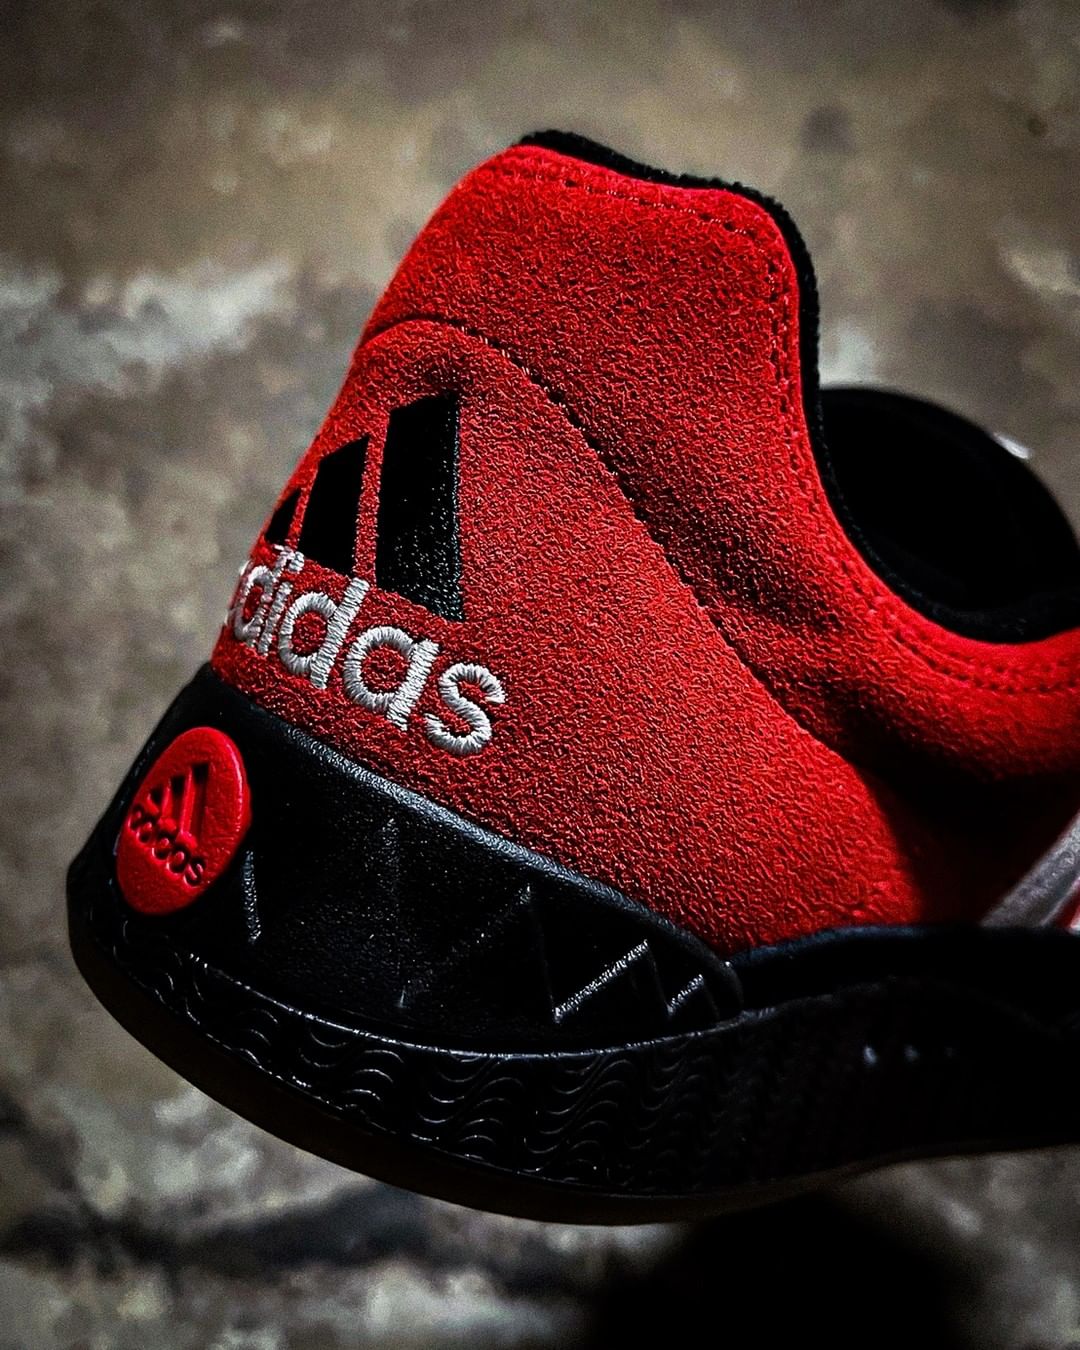 【近日発売】adidas Originals ADIMATIC "Red/Black" (アディダス オリジナルス アディマティック "レッド/ブラック")